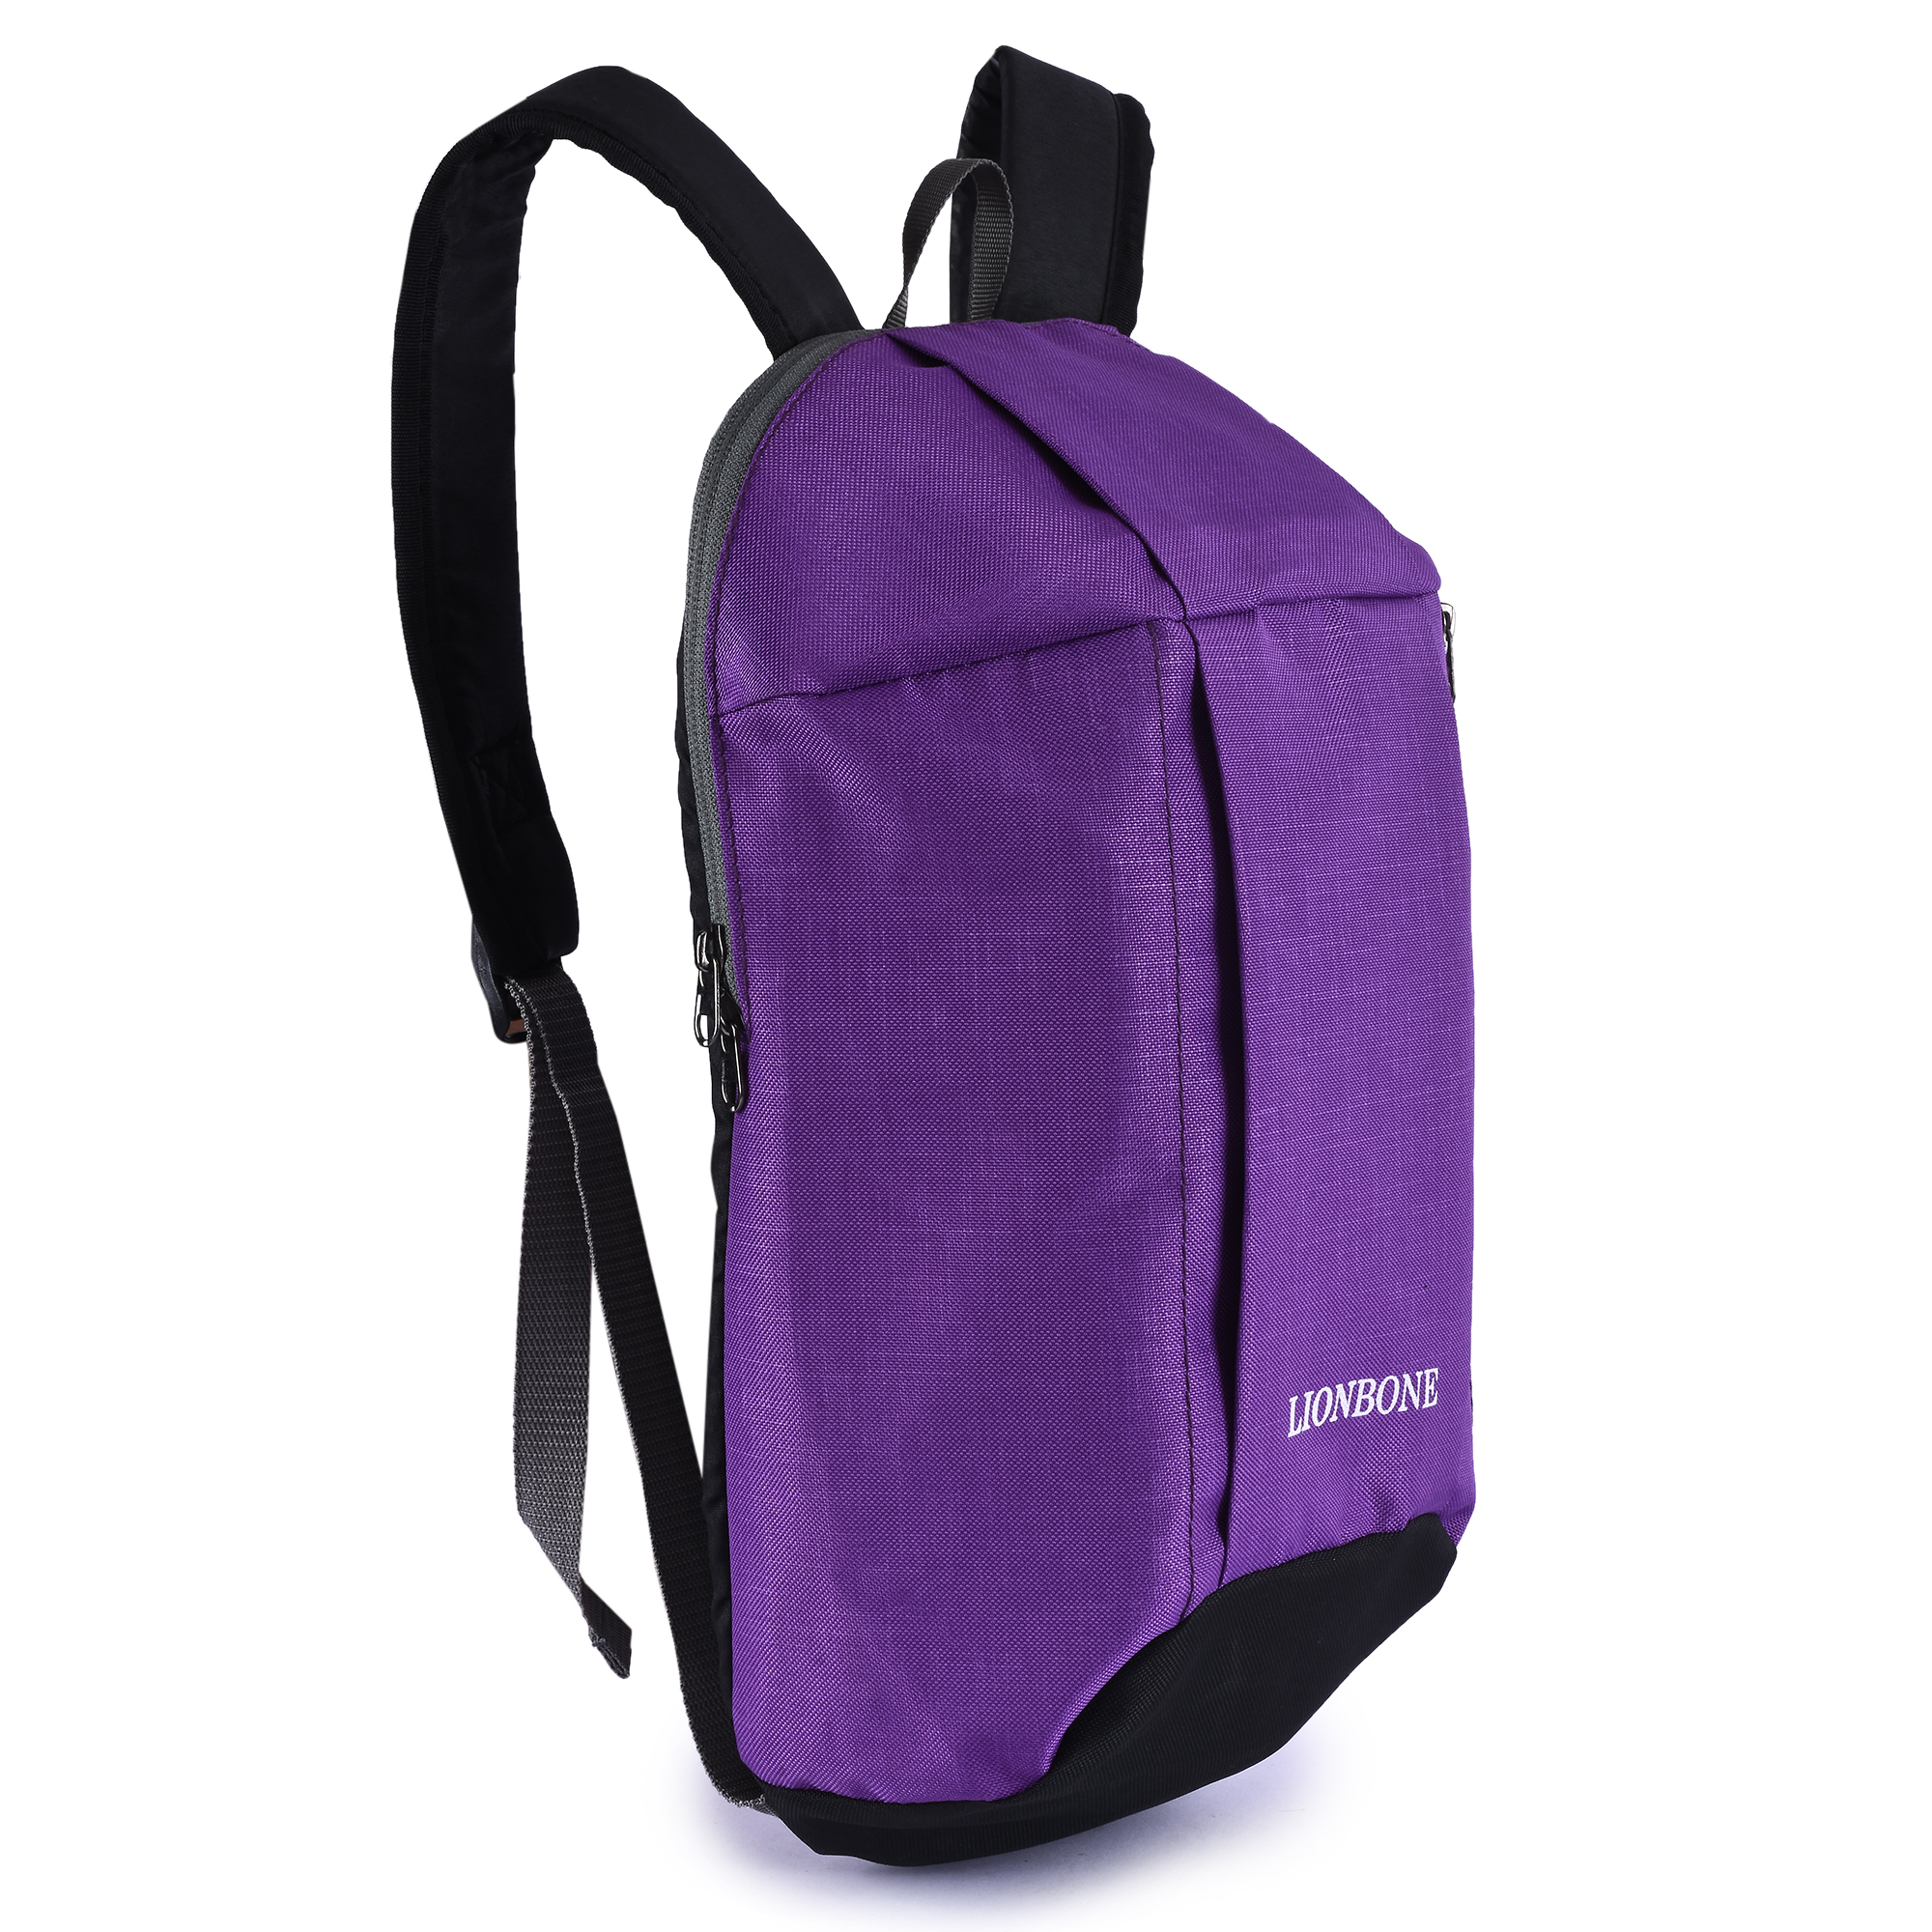 Buy Lionbone Bag Unisex Boys Girls Backpack Polyester Back bag with ...